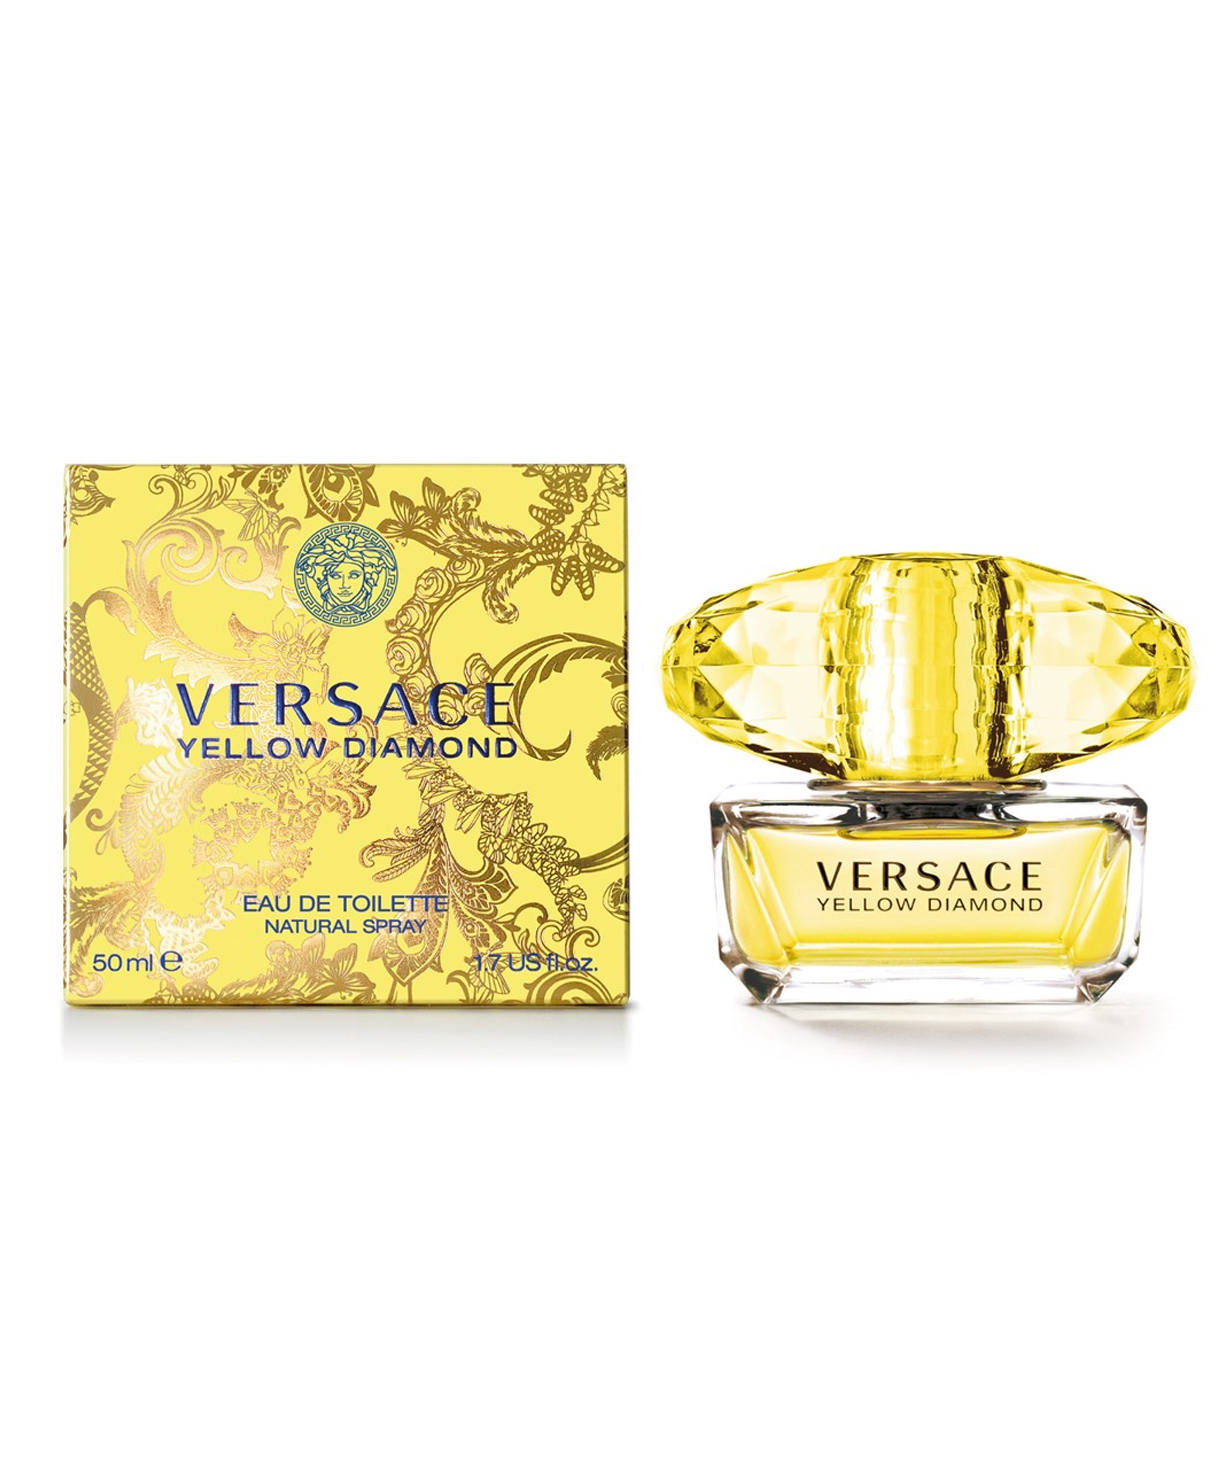 Perfume «Versace» Yellow Diamond, for women, 50 ml